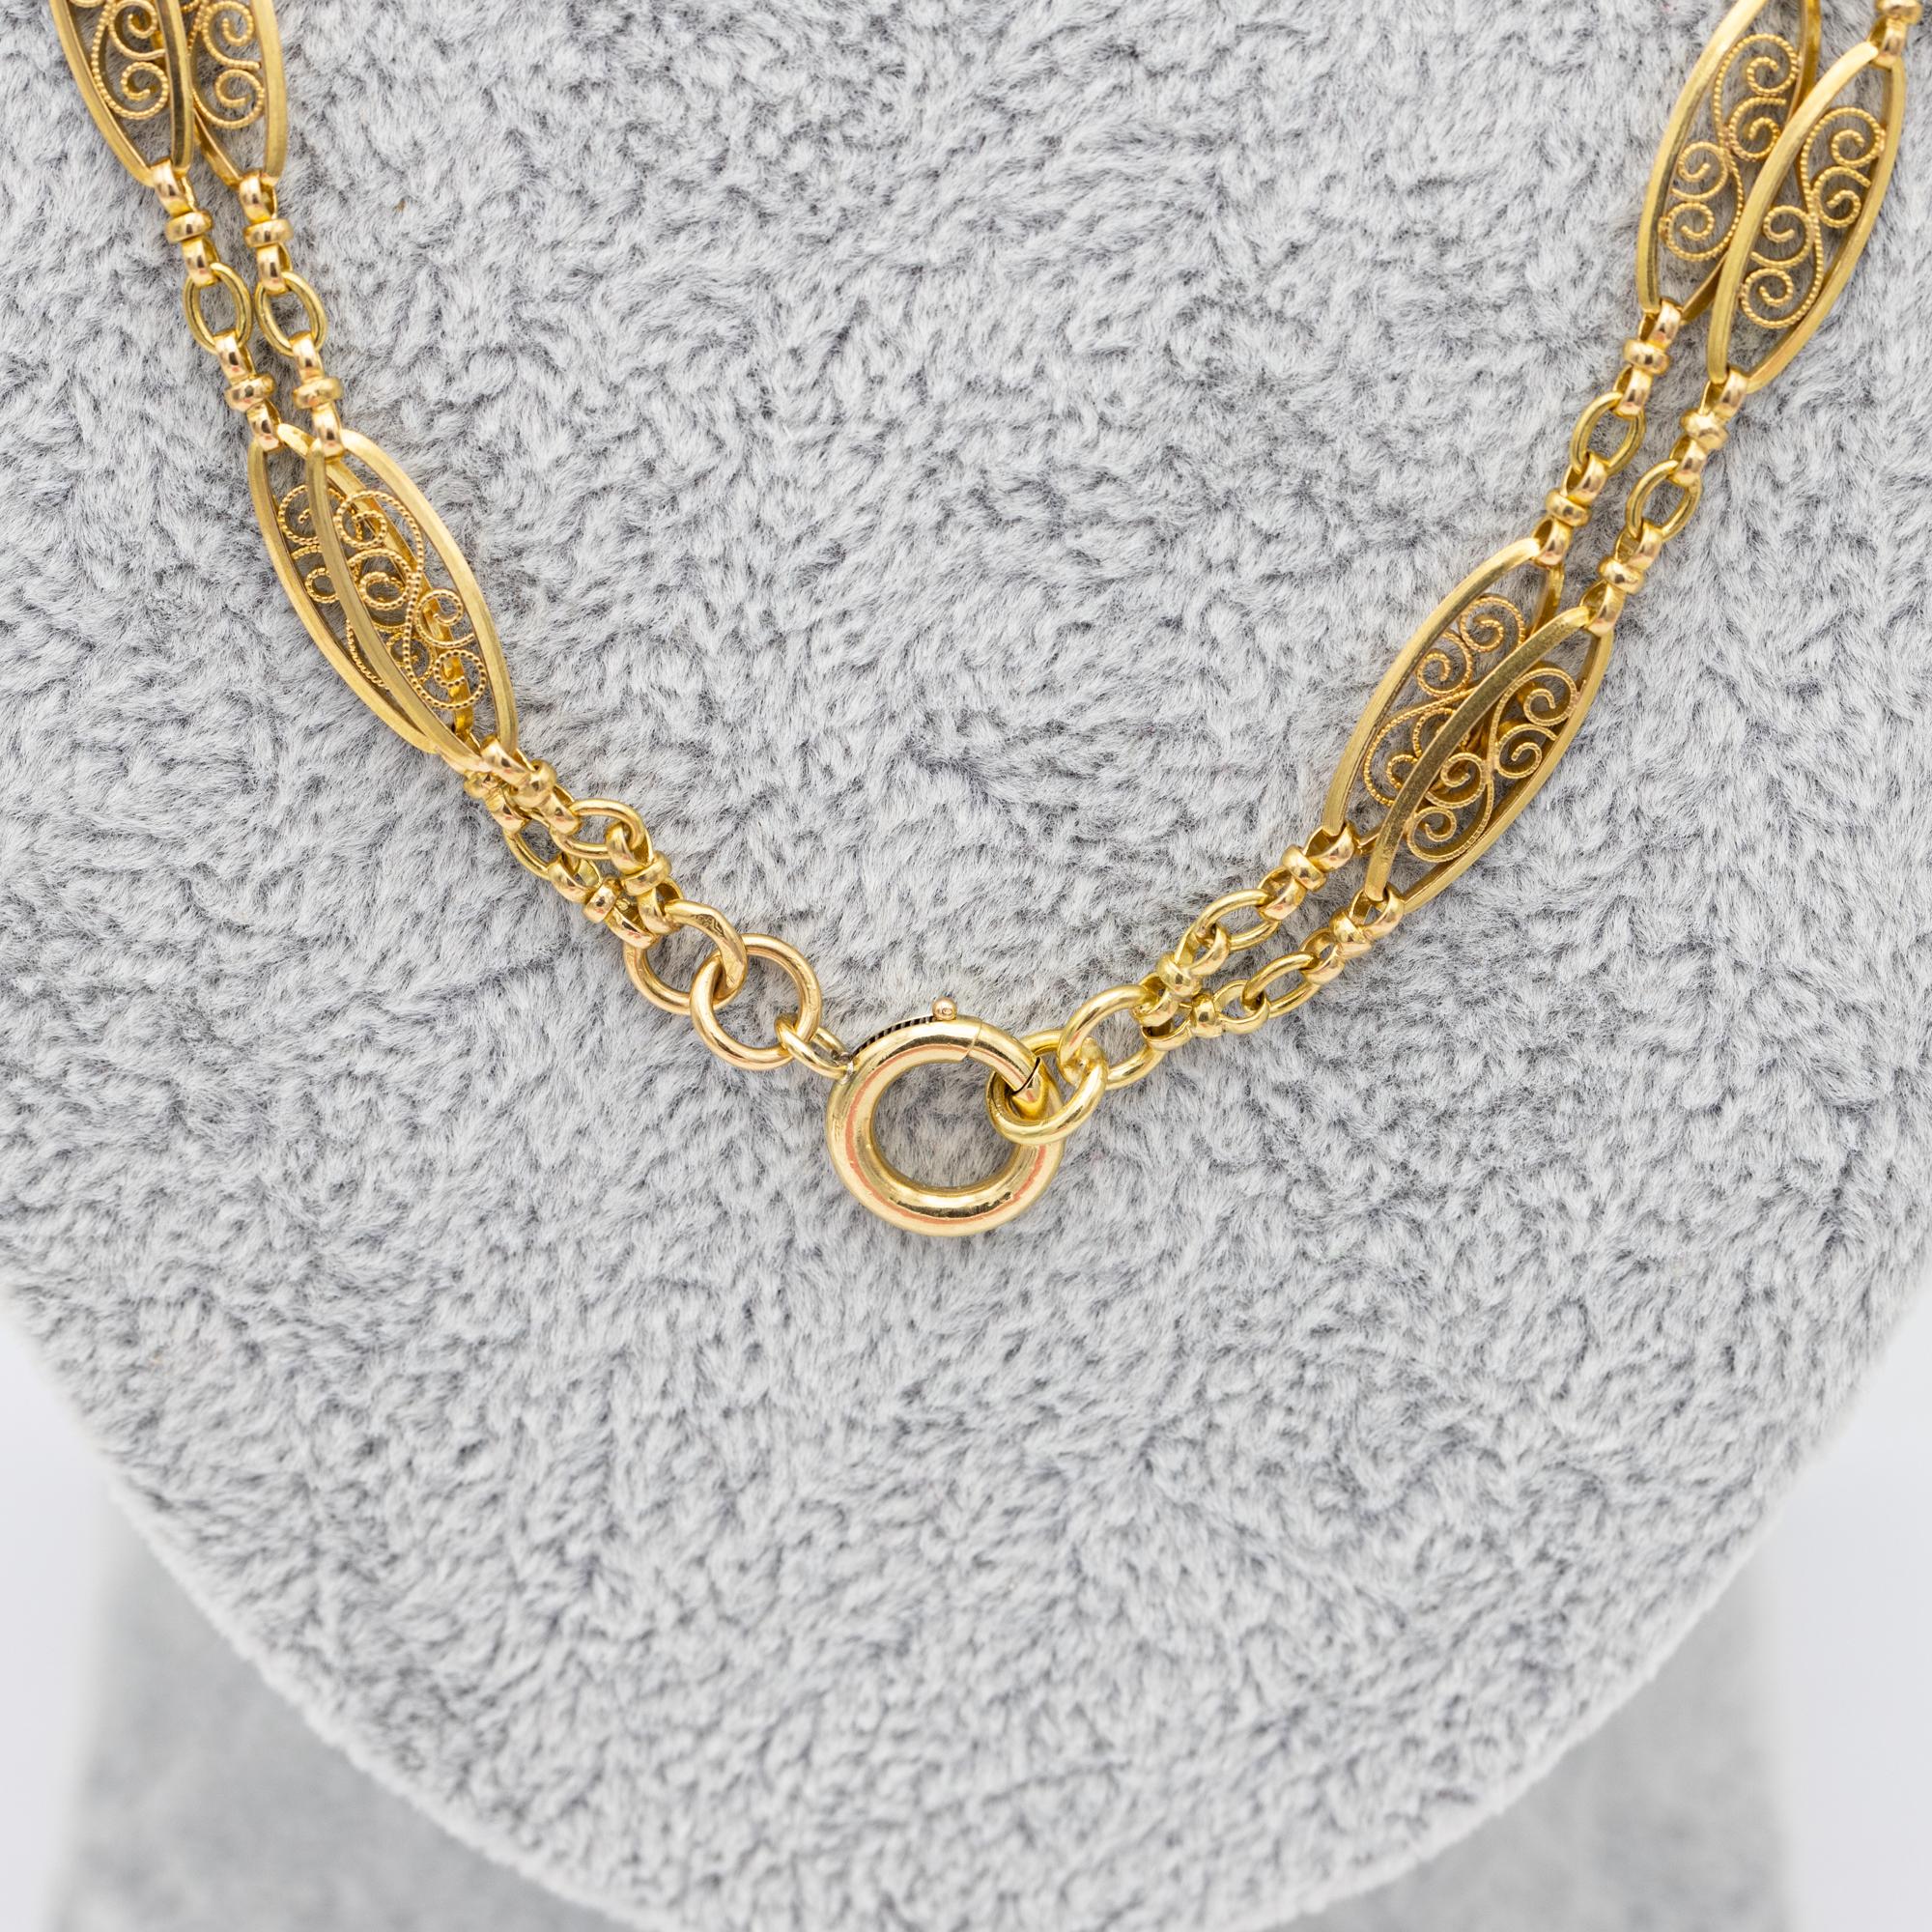 Antique 18k gold Sautoir necklace, 155cm long guard, Victorian double rope chain 11